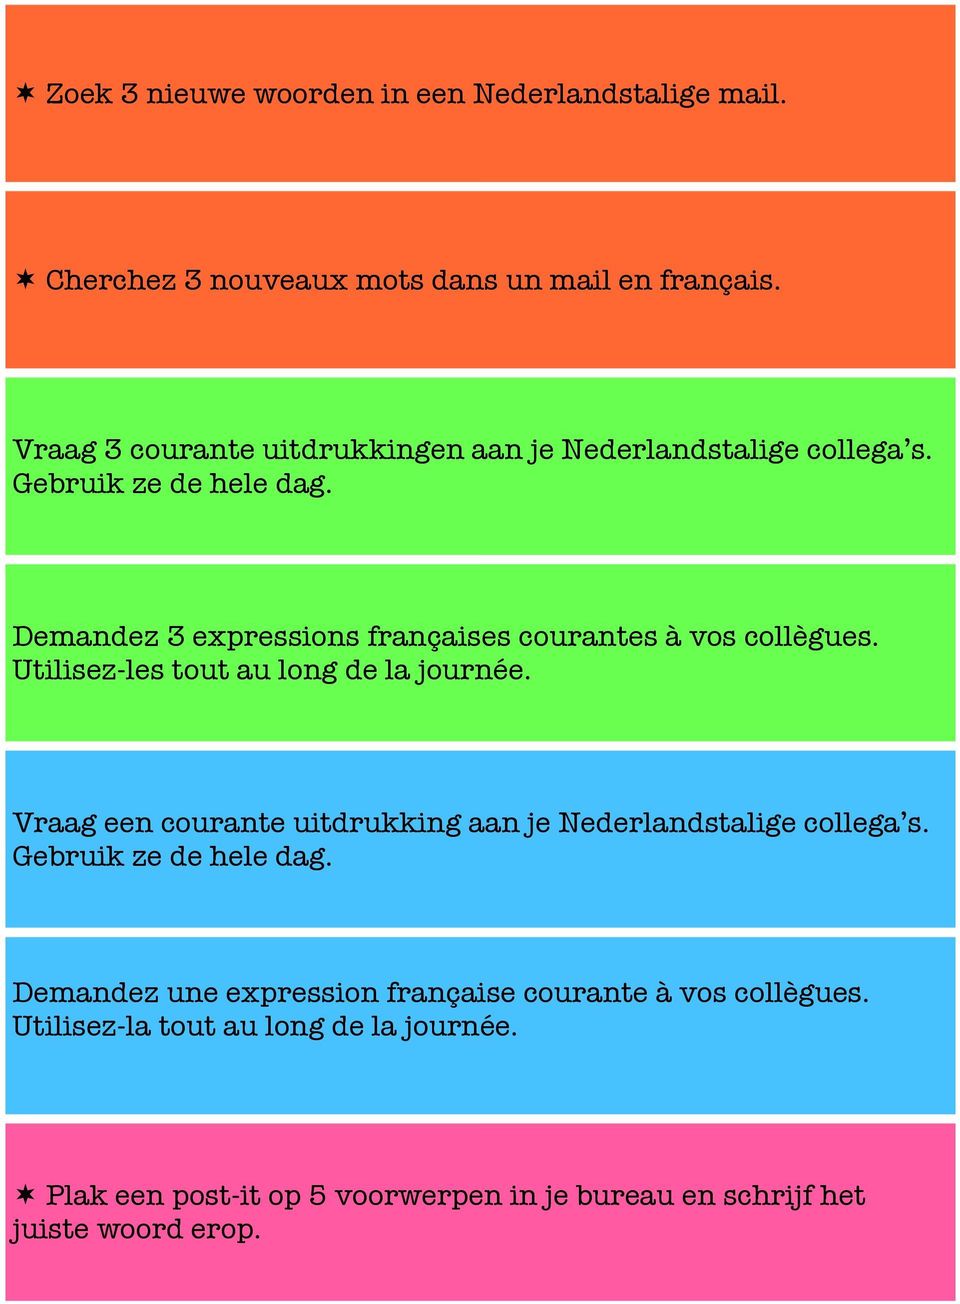 Demandez 3 expressions françaises courantes à vos collègues. Utilisez-les tout au long de la journée.